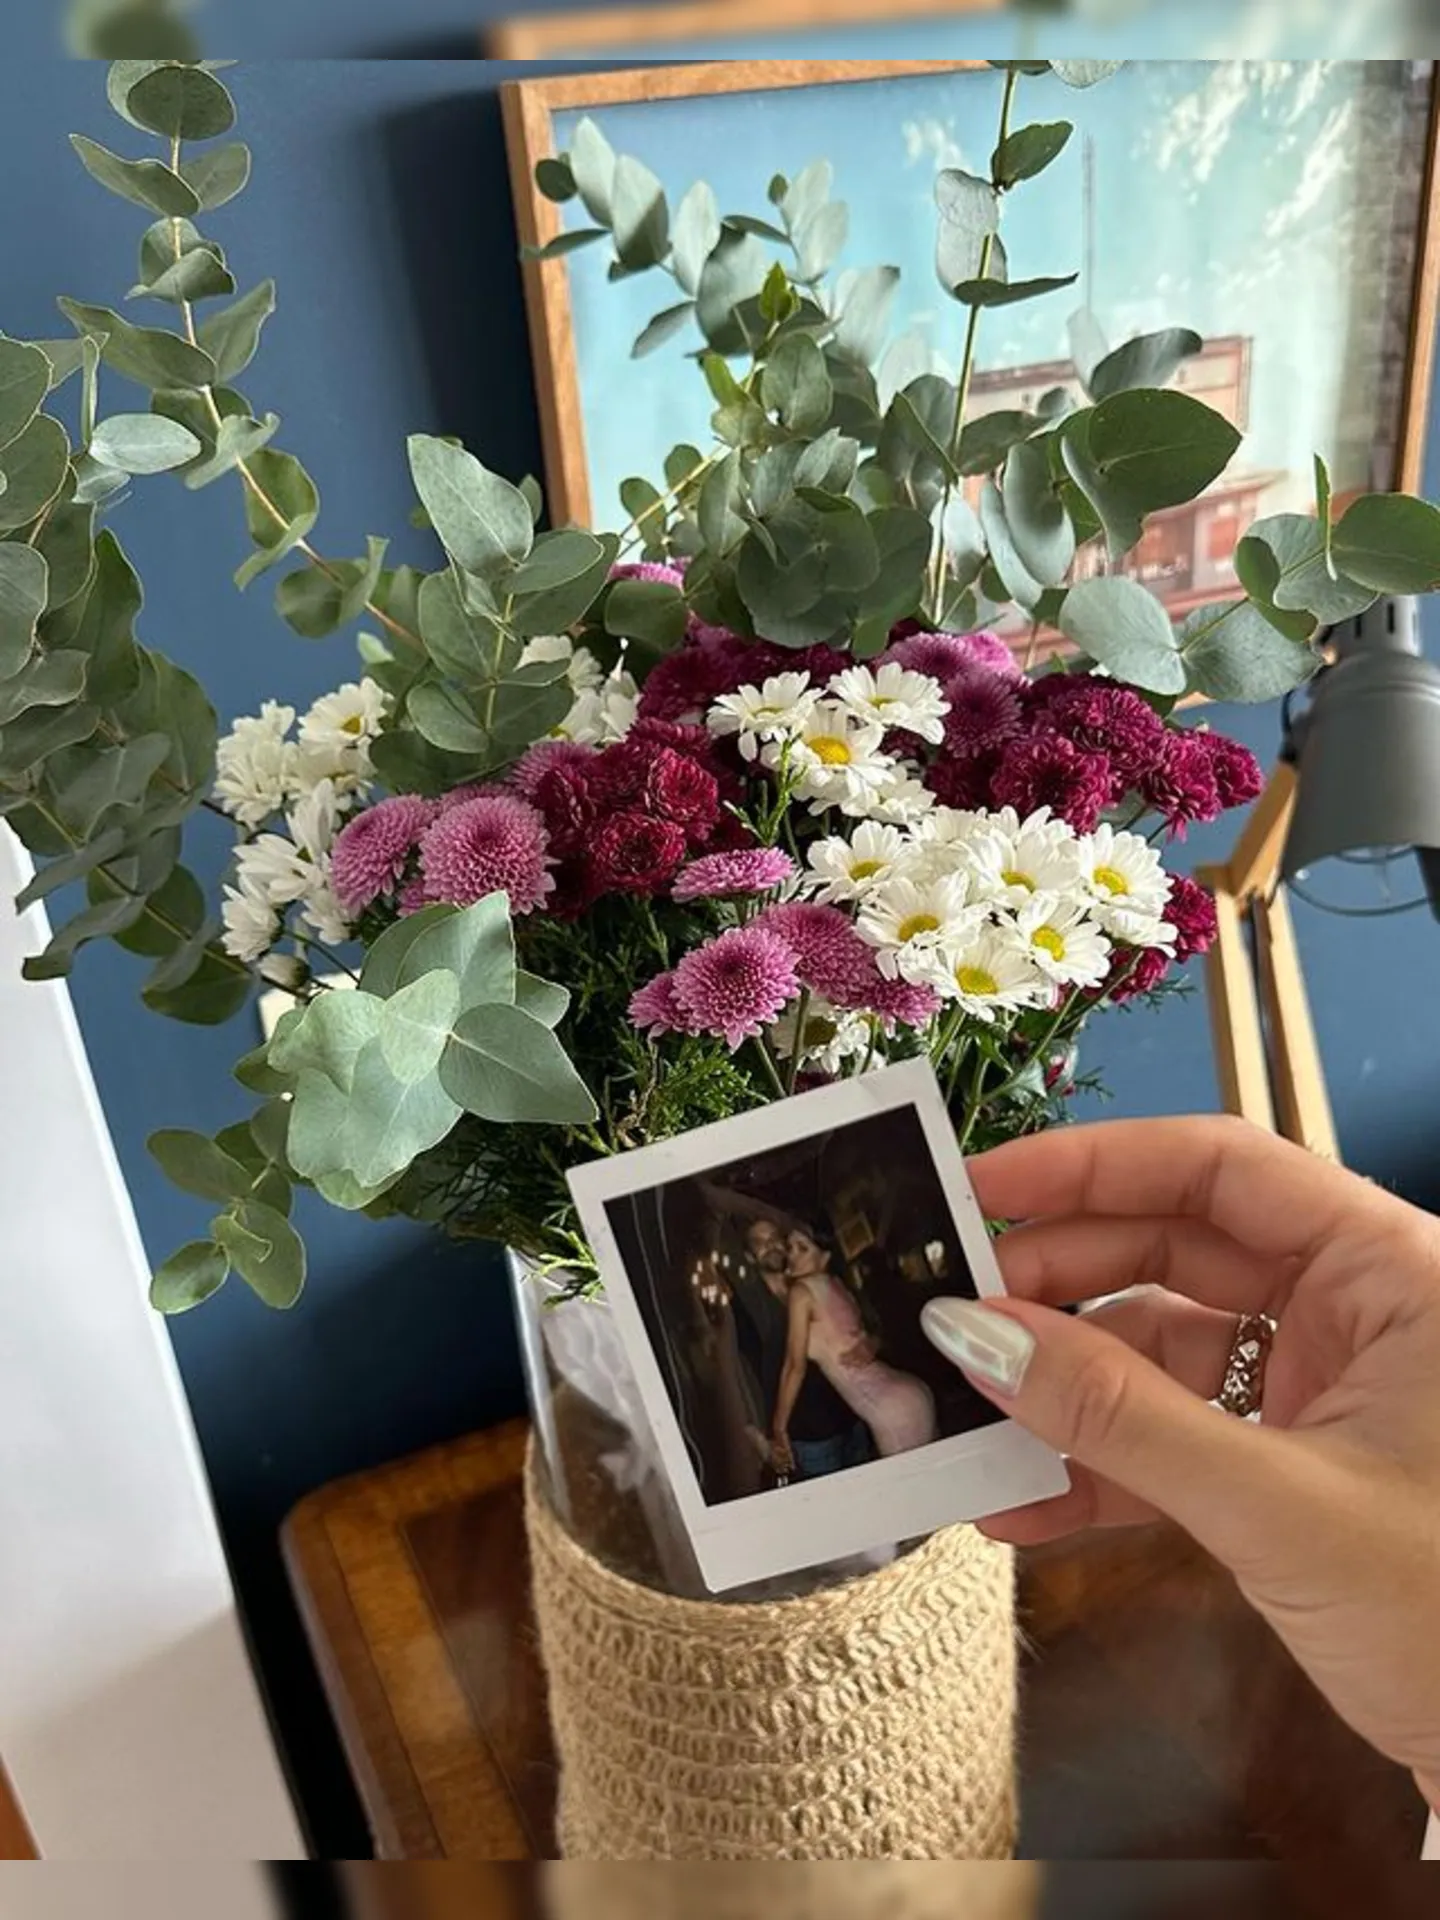 Foto e flores que Rafa recebeu foram postados em suas redes sociais